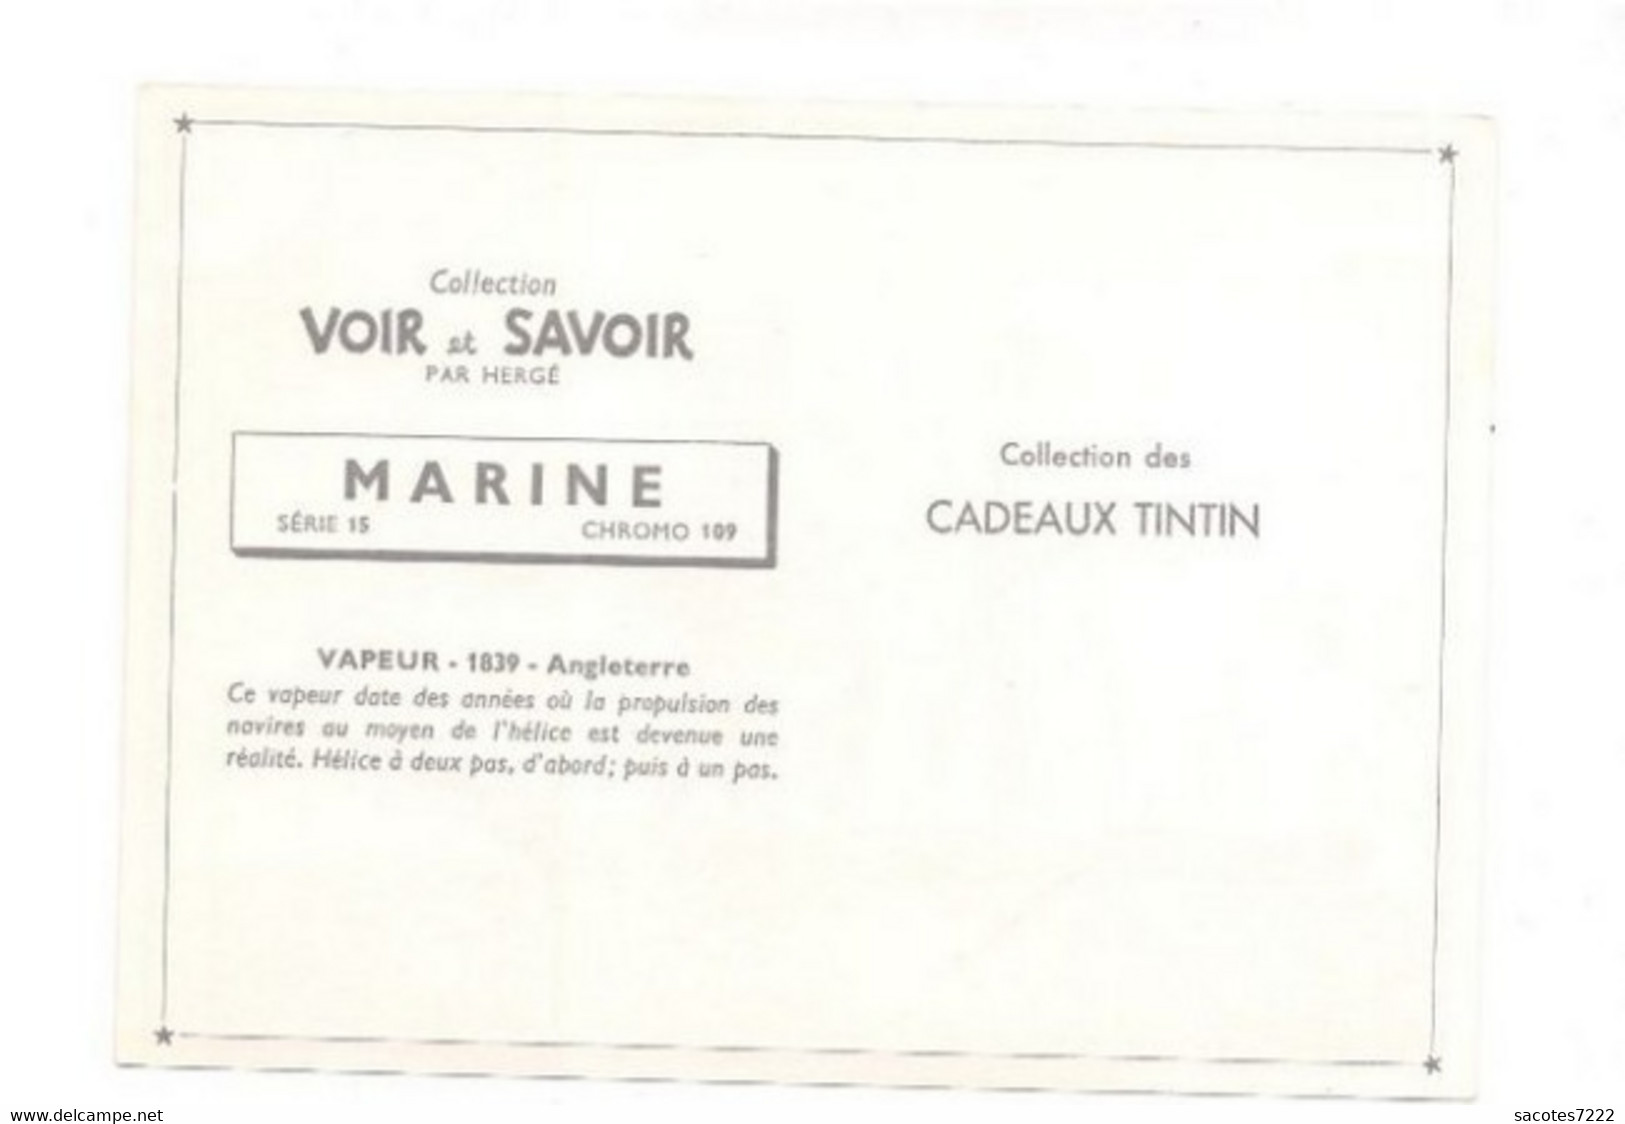 Collection Des CADEAUX TINTIN - CHROMO MARINE  : VAPEUR - 1839 - Angleterre    Série 15 N° 109 - - Chromo's